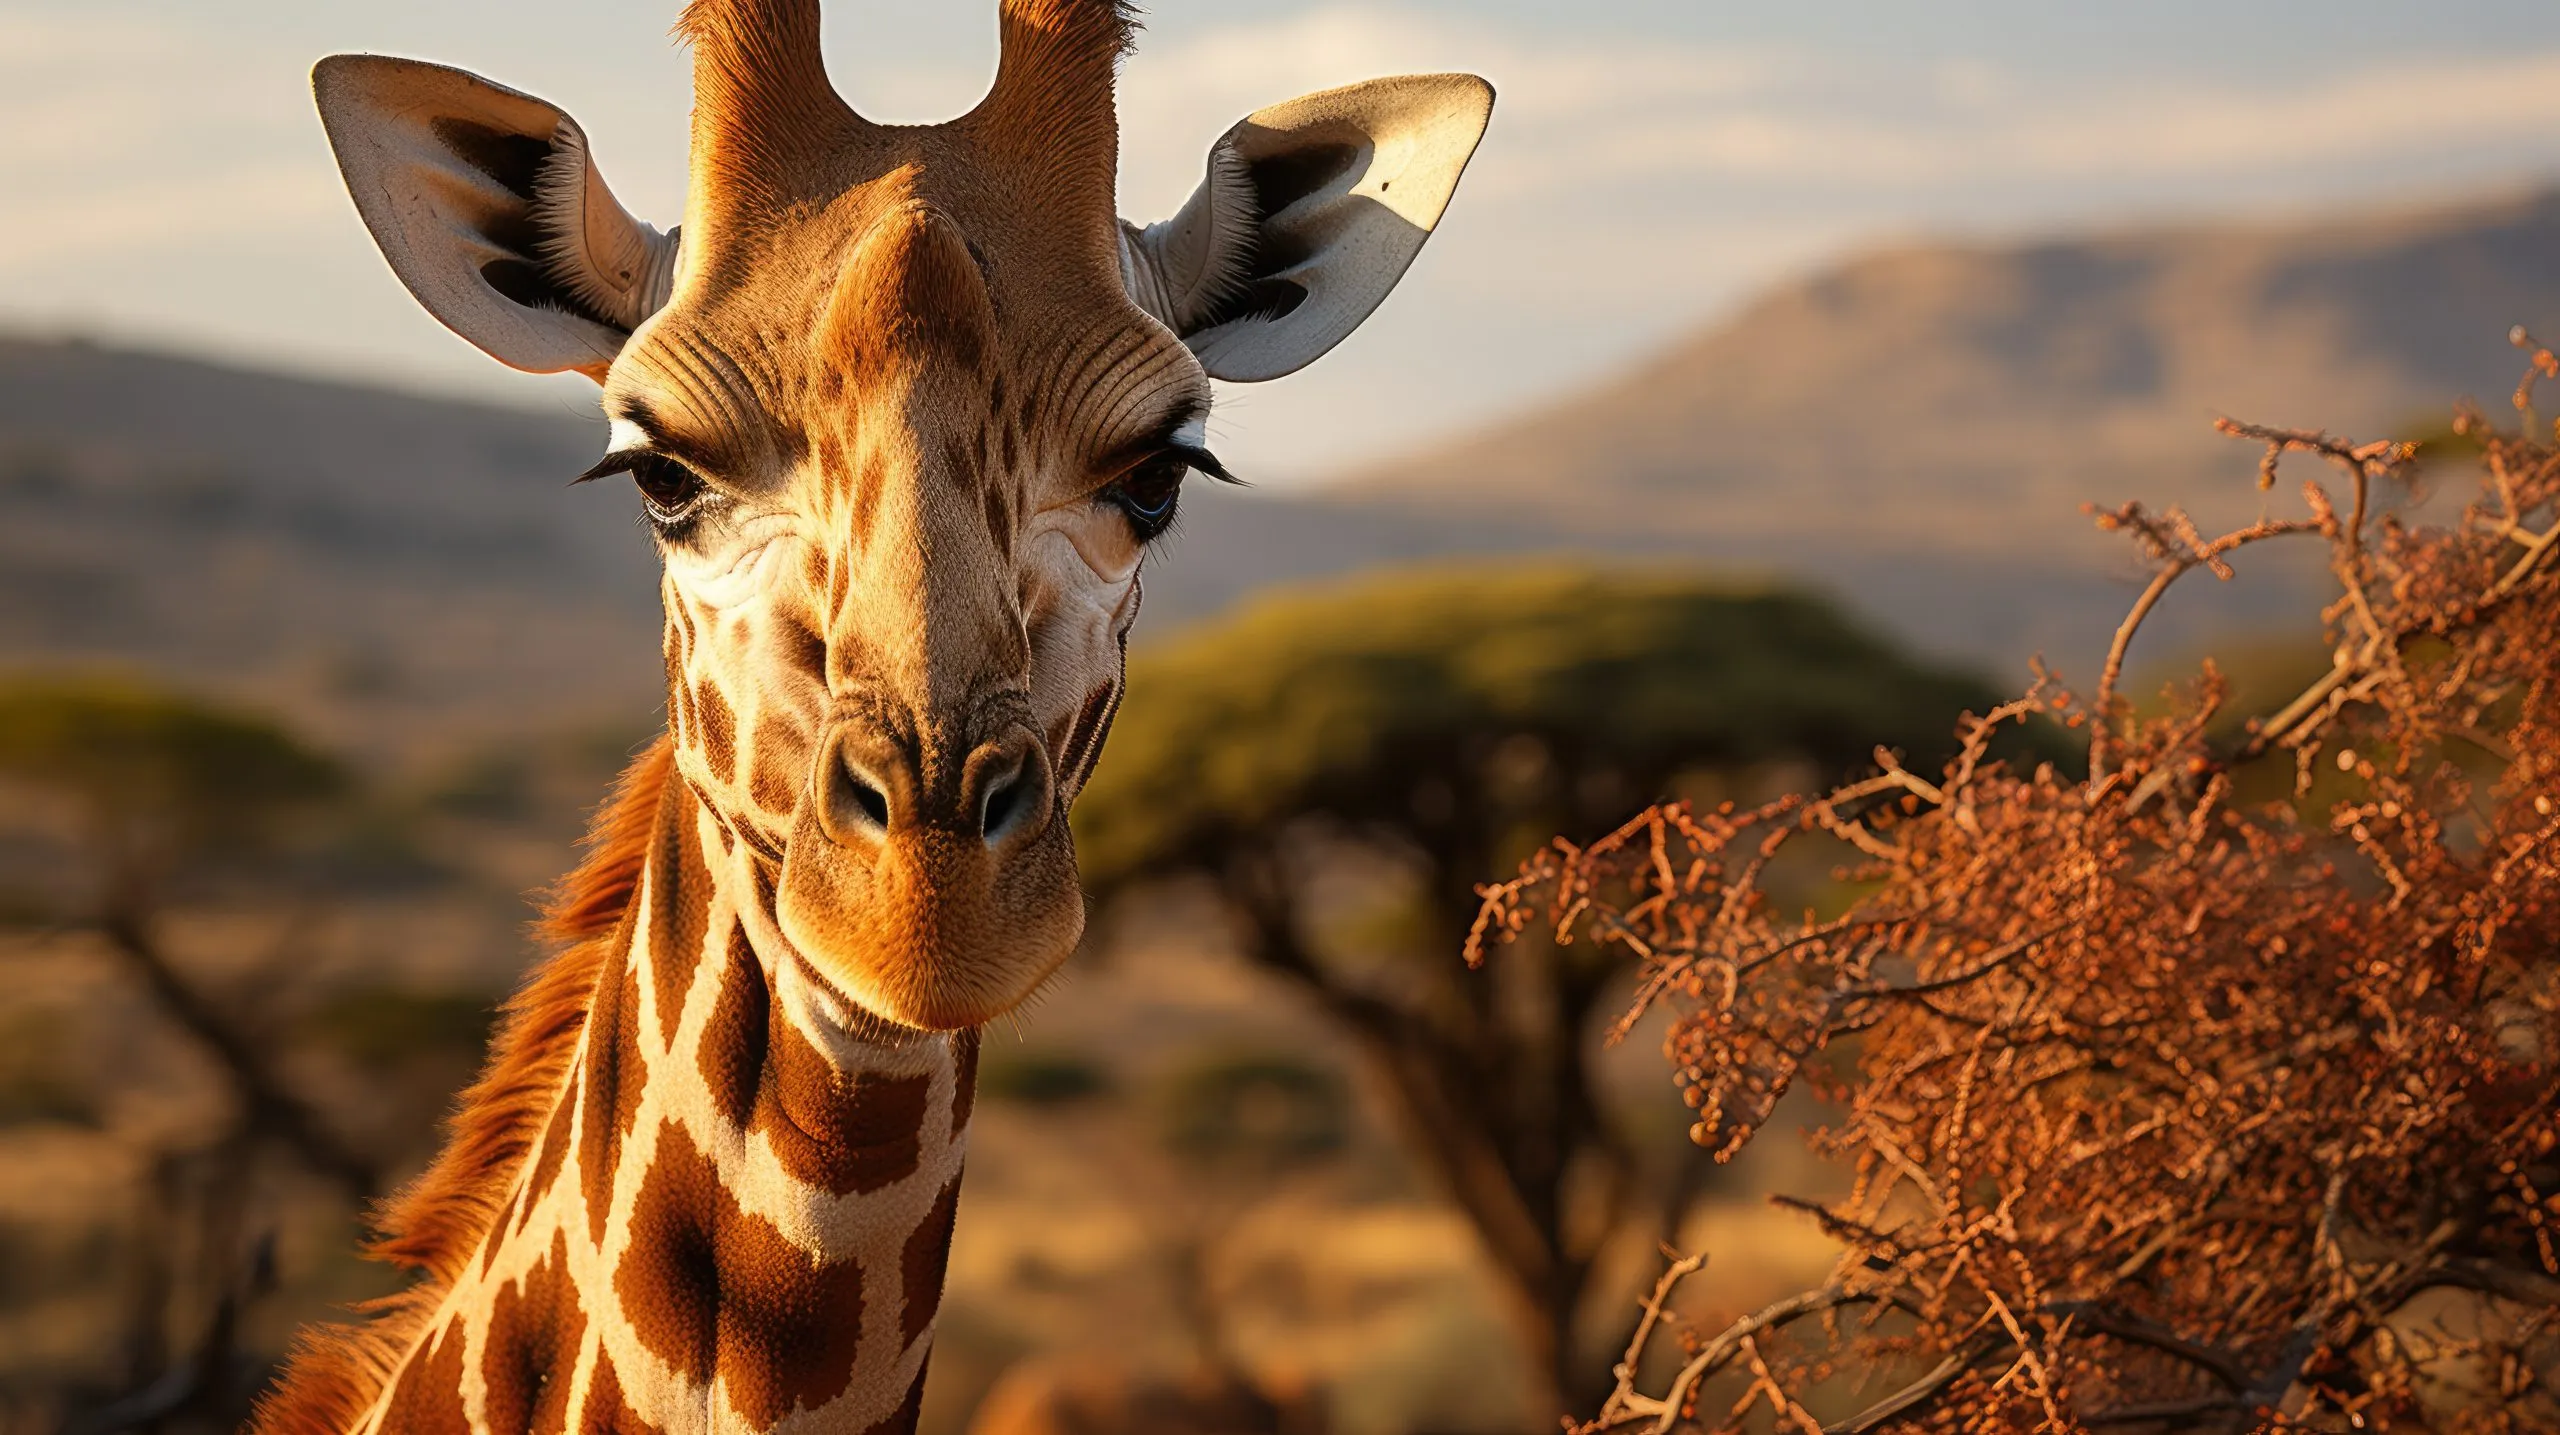 En retikuleret giraf (Giraffa camelopardalis reticulata) græsser på de øverste grene af et akacietræ i Kenyas Samburu National Reserve, hvor dens lange hals og mønstrede pels står højt i det afrikanske lys.